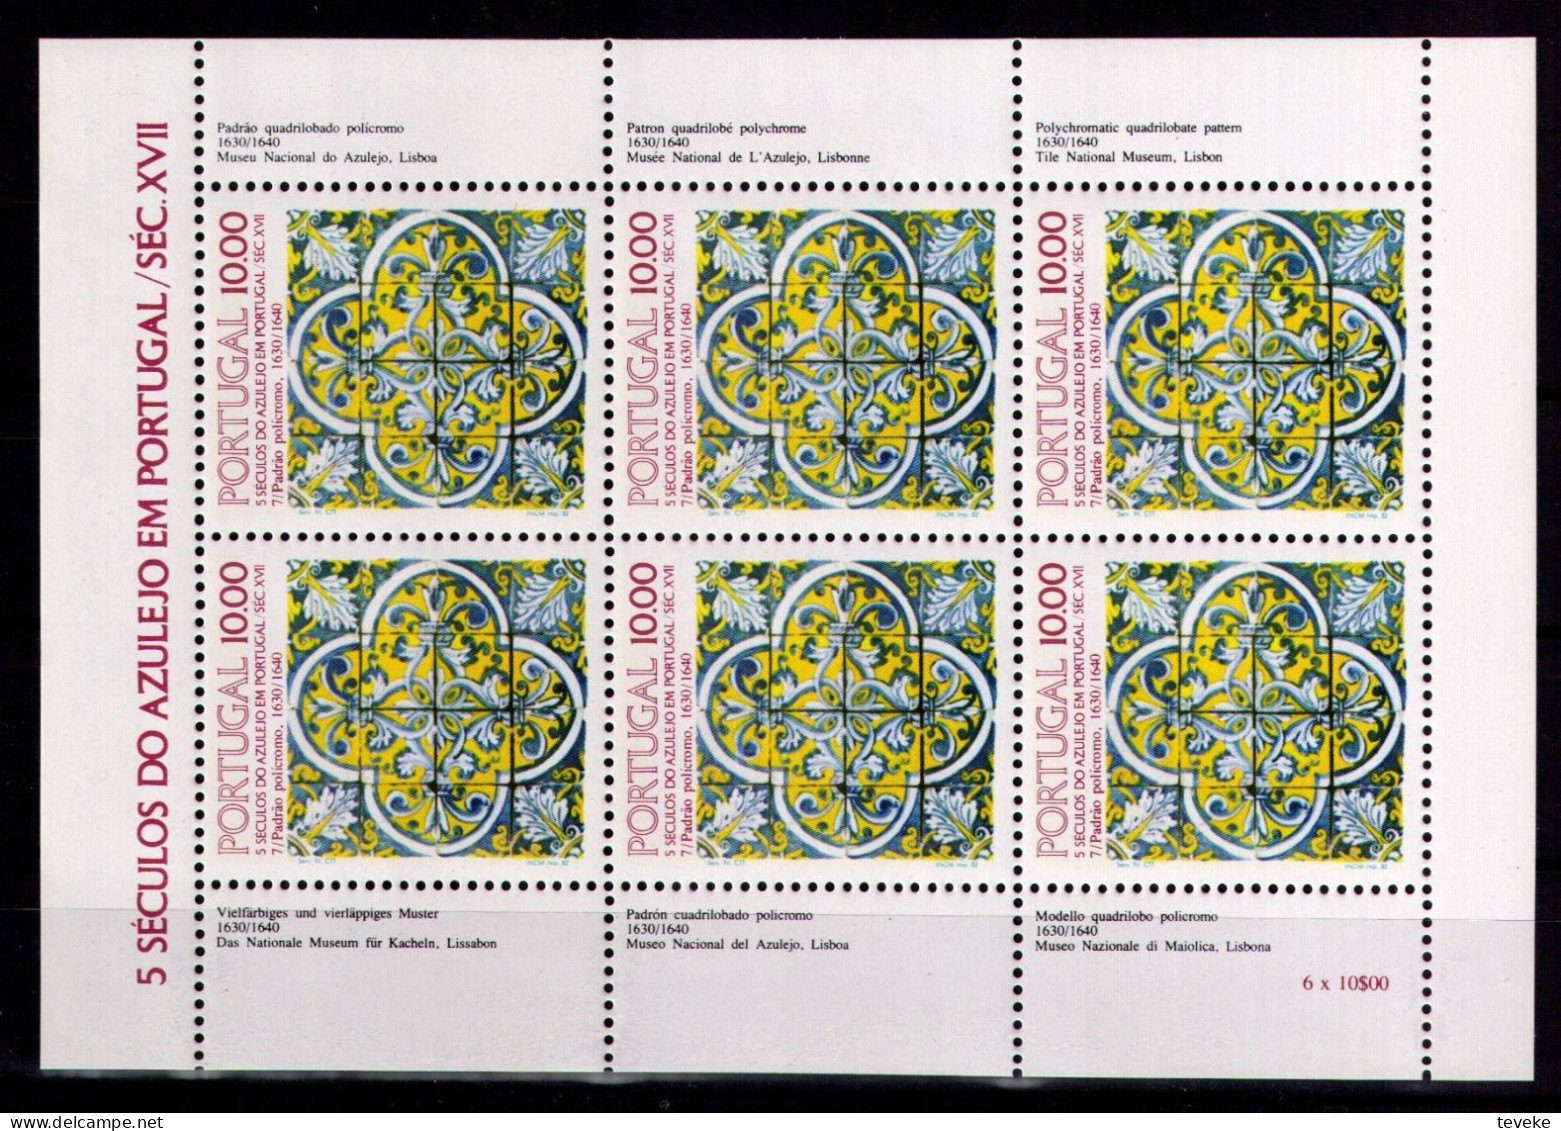 PORTUGAL 1982 - Michel Nr. 1576 KB - MNH ** - Azulejos - Neufs